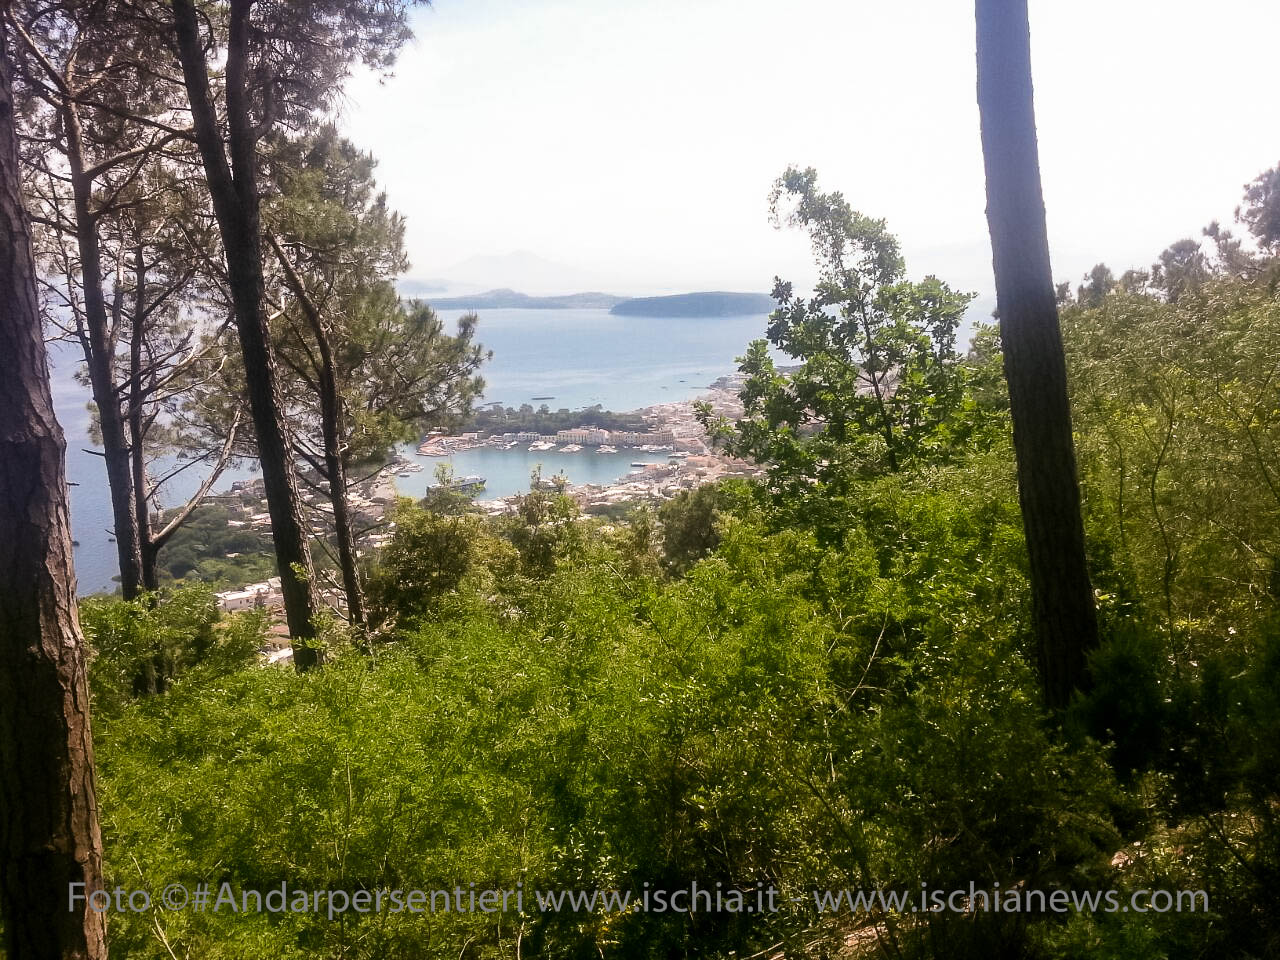 Andar per sentieri Bosco della Maddalena nel comune di Casamicciola Terme, vista sul porto di Ischia - isola d'Ischia